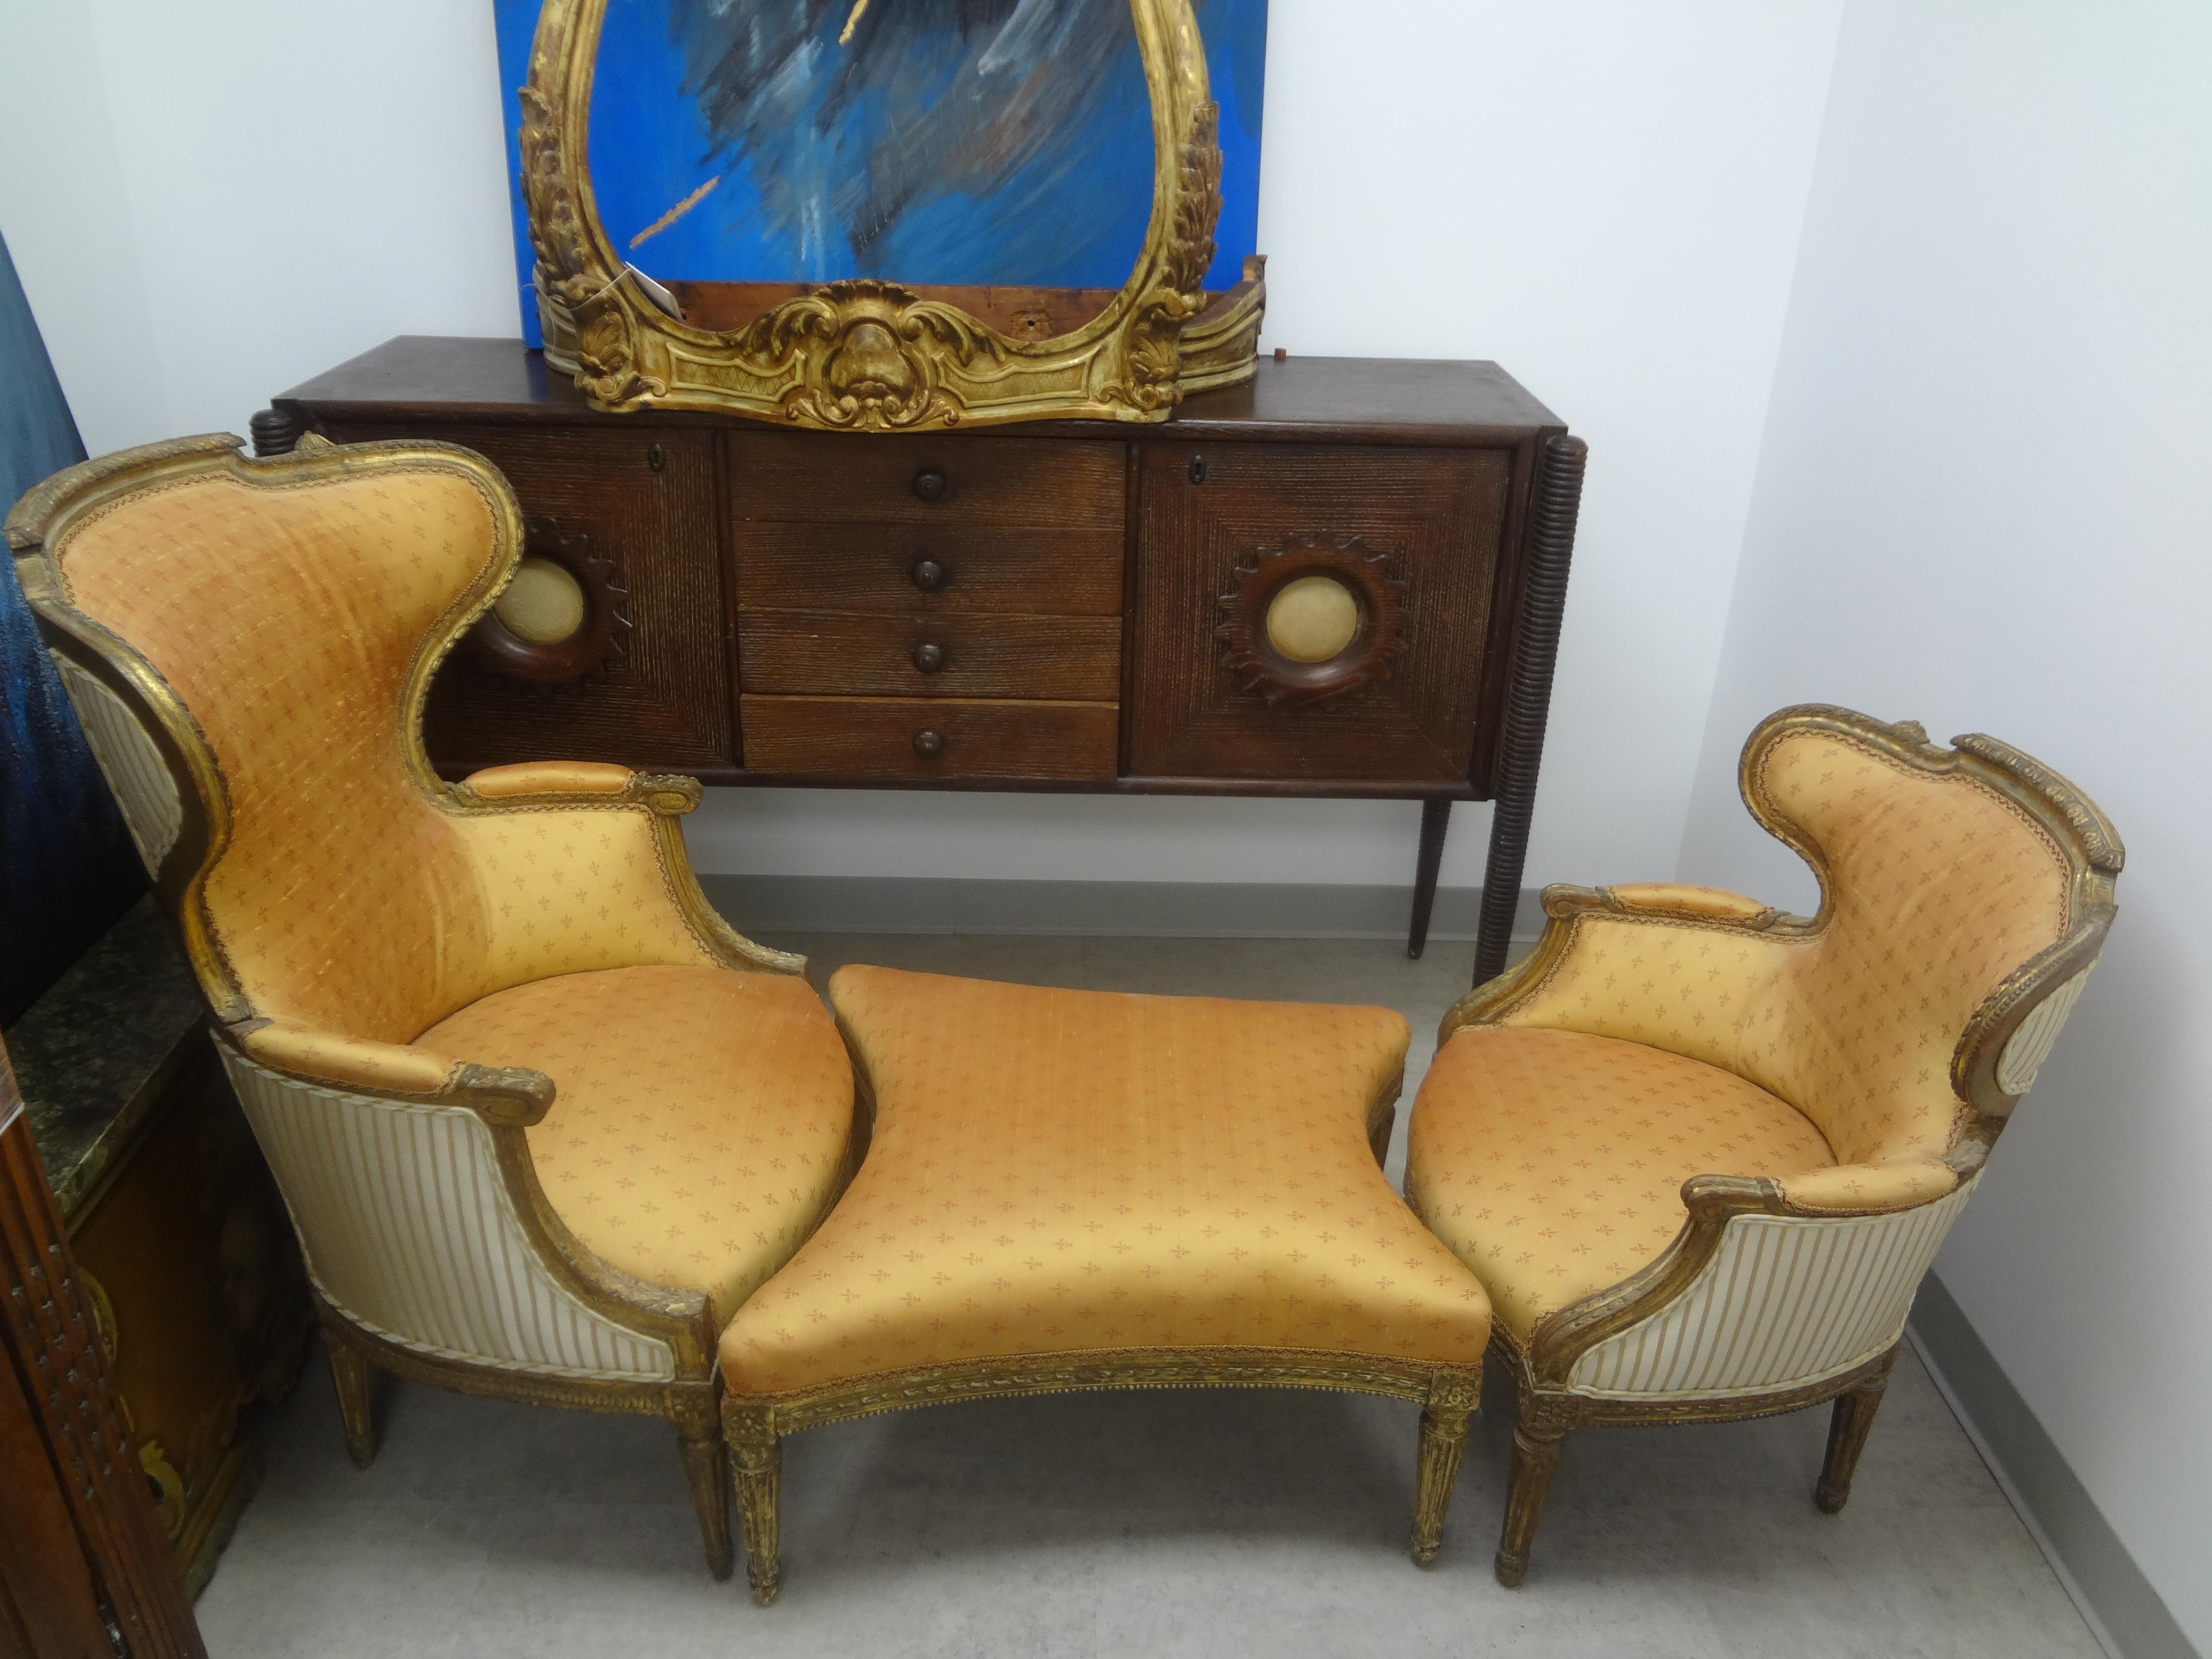 Duchesse Brisee en bois doré de style Louis XVI du 19e siècle.
Superbe Duchesse Brisee en bois doré de style Louis XVI, datant du 19ème siècle. Notre chaise longue Napoléon III de forme inhabituelle est composée de trois pièces. Une grande bergère